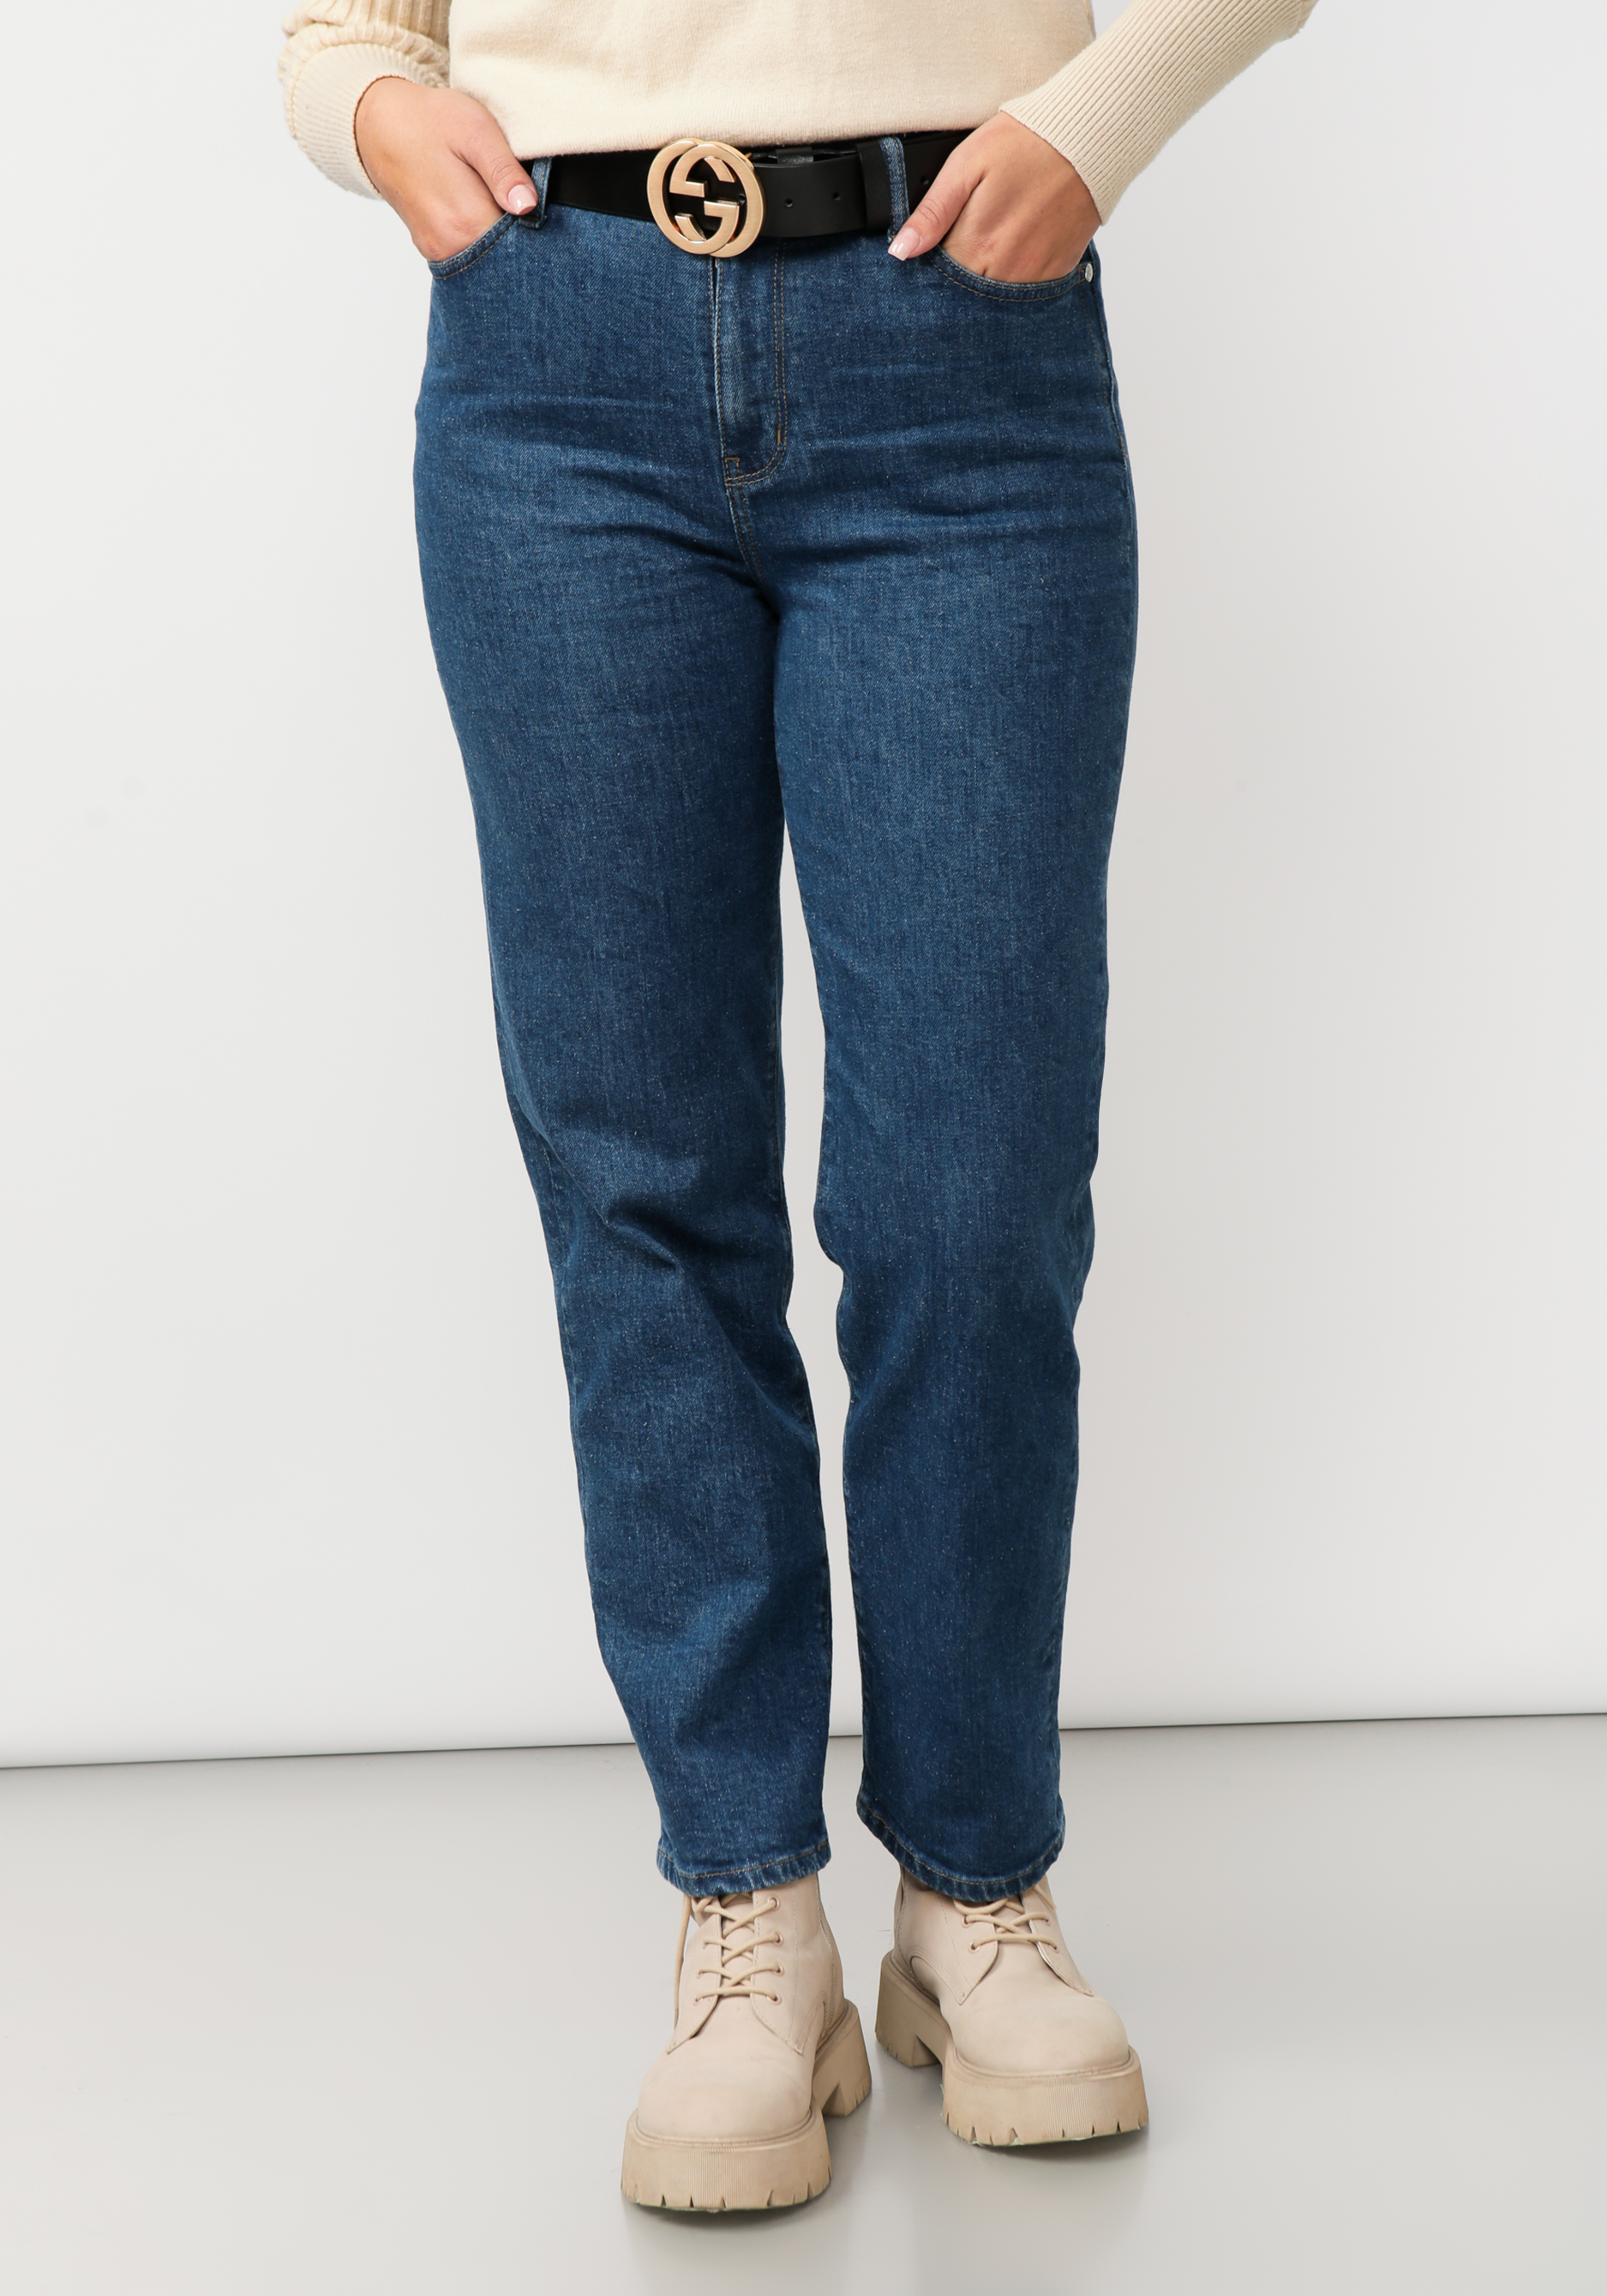 Джинсы прямого кроя с вышивкой на кармане жен джинсы арт 12 0155 голубой р 26